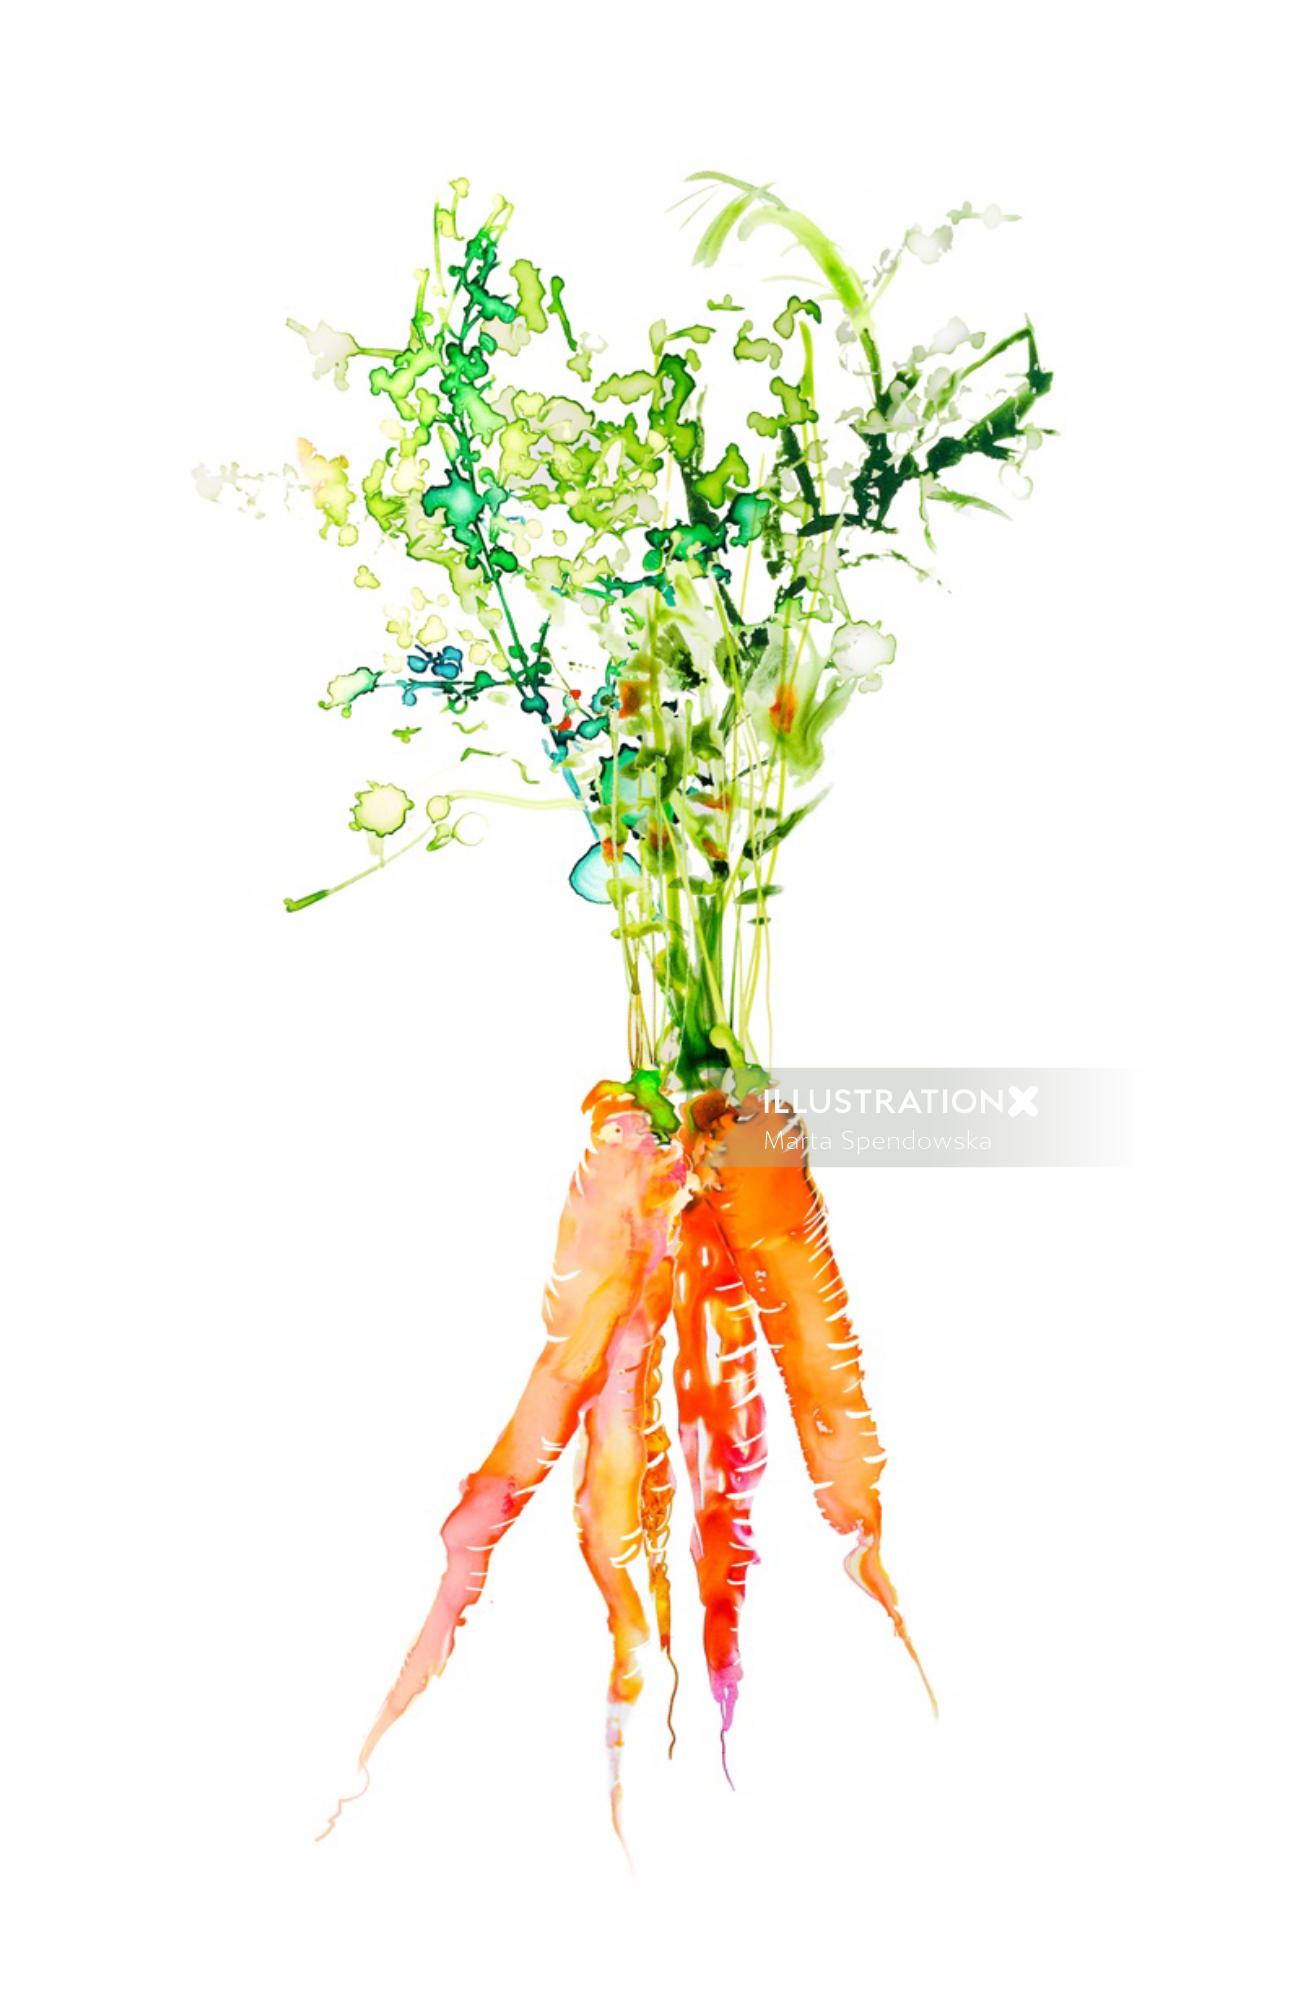 Illustration of Carrot